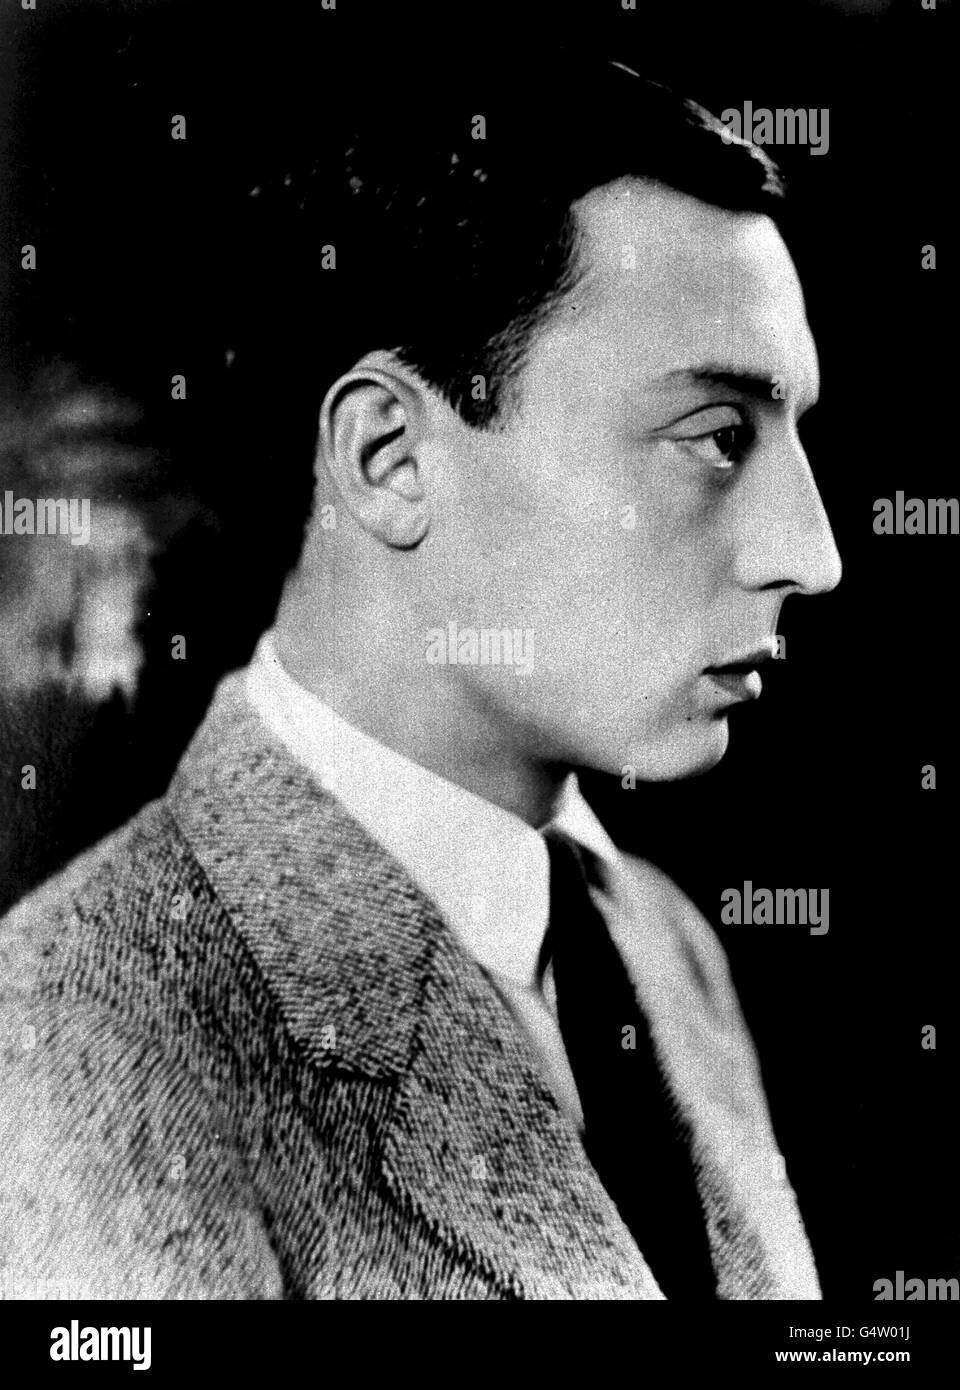 01/01/1966 :an diesem Tag Buster Keaton starb. Eine Bibliotheksdatei, die vom Stummfilm-Comedy-Schauspieler Buster Keaton aufgenommen wurde. 1. Februar 1966 Buster Keaton stirbt. Stockfoto